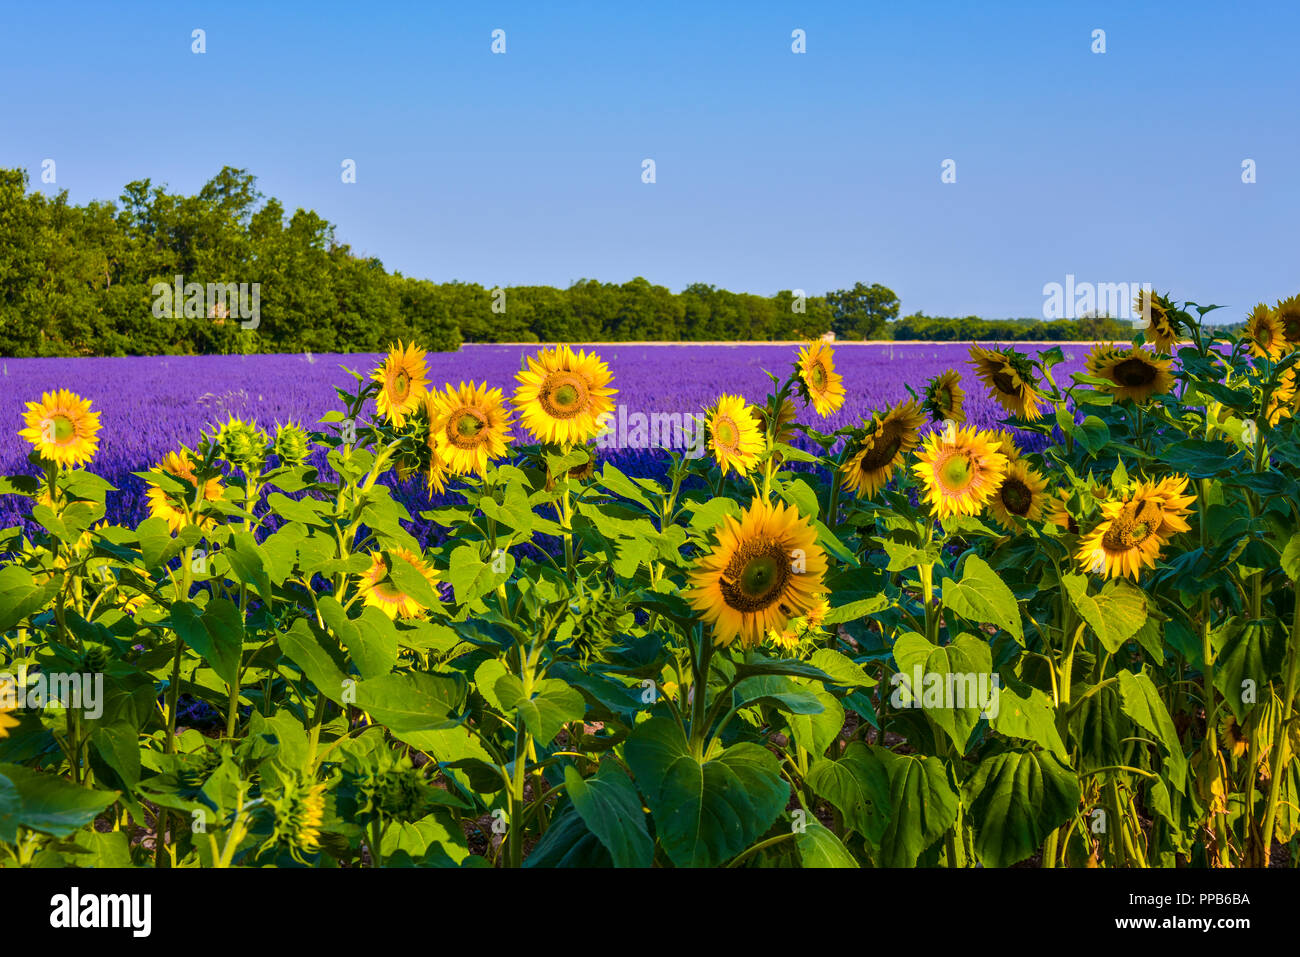 lavender fields with sunflowers, Provence, France, near Sainte-Croix-du-Verdon, department Alpes-de-Haute-Provence, region Provence-Alpes-Côte d’Azur Stock Photo